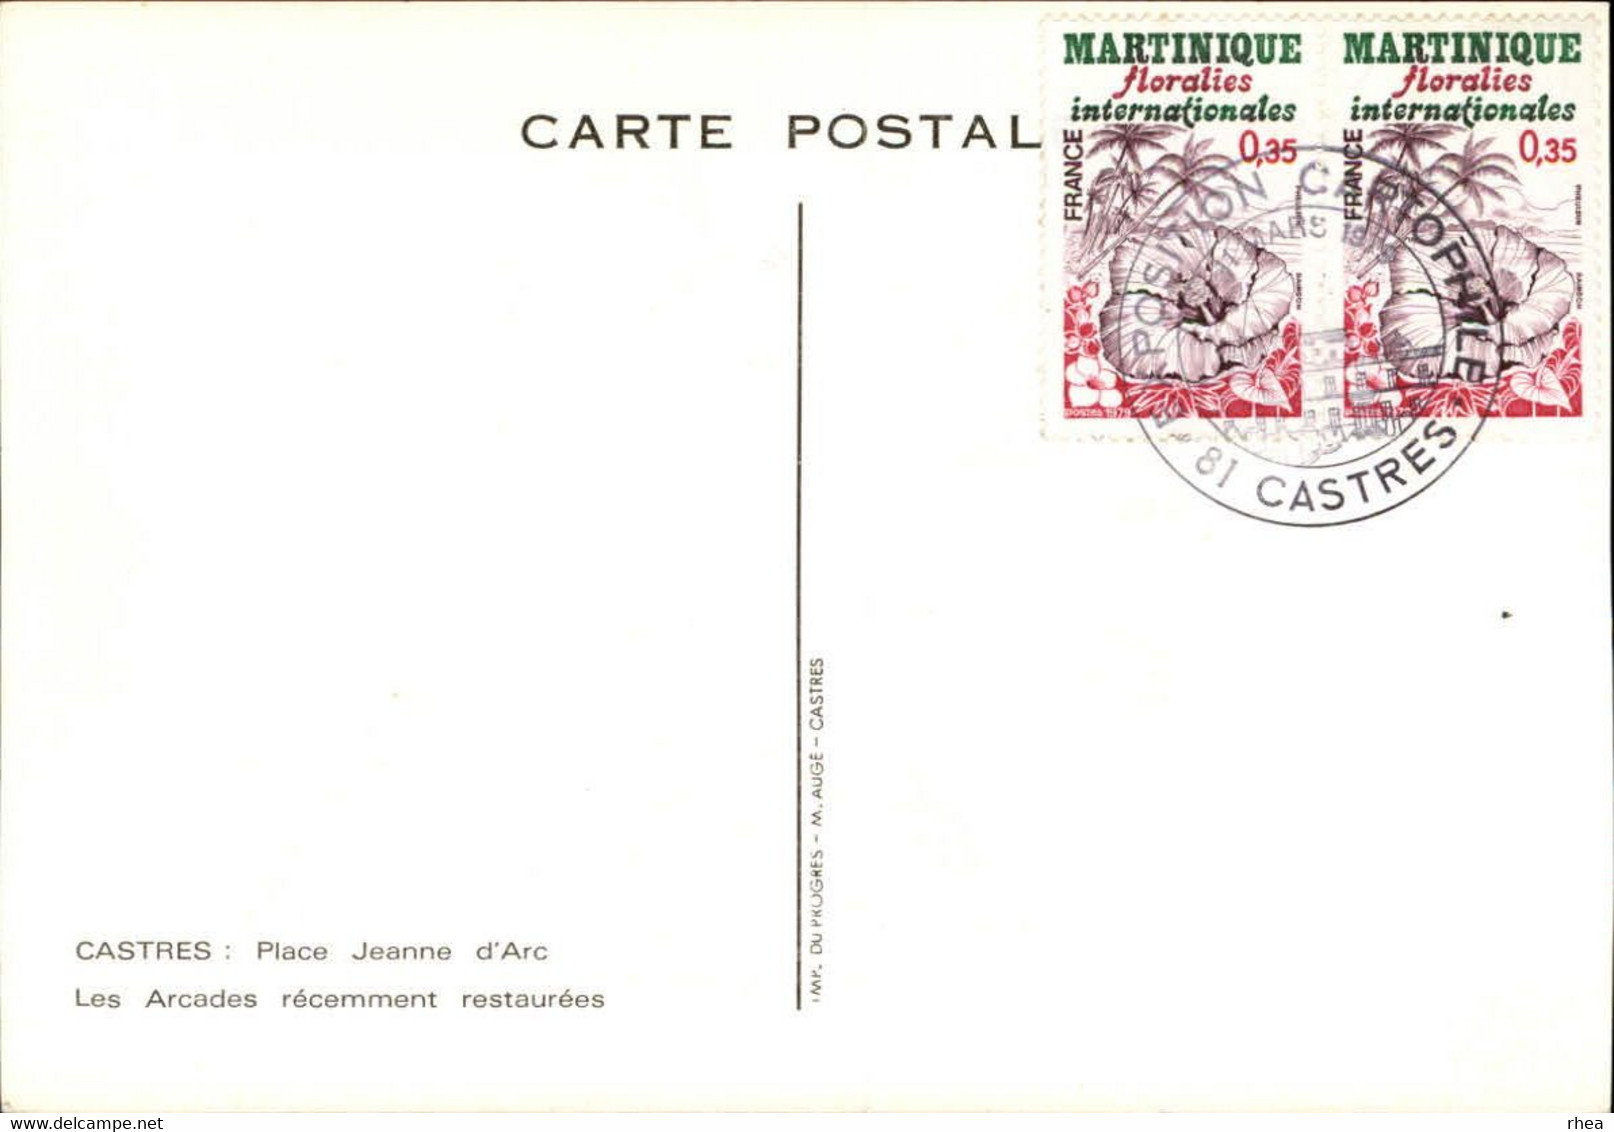 SALONS DE COLLECTIONS - 2 CARTES - Exposition Cartophile - Salon De Cartes Postales - 81 CASTRES - 1979 - Bourses & Salons De Collections